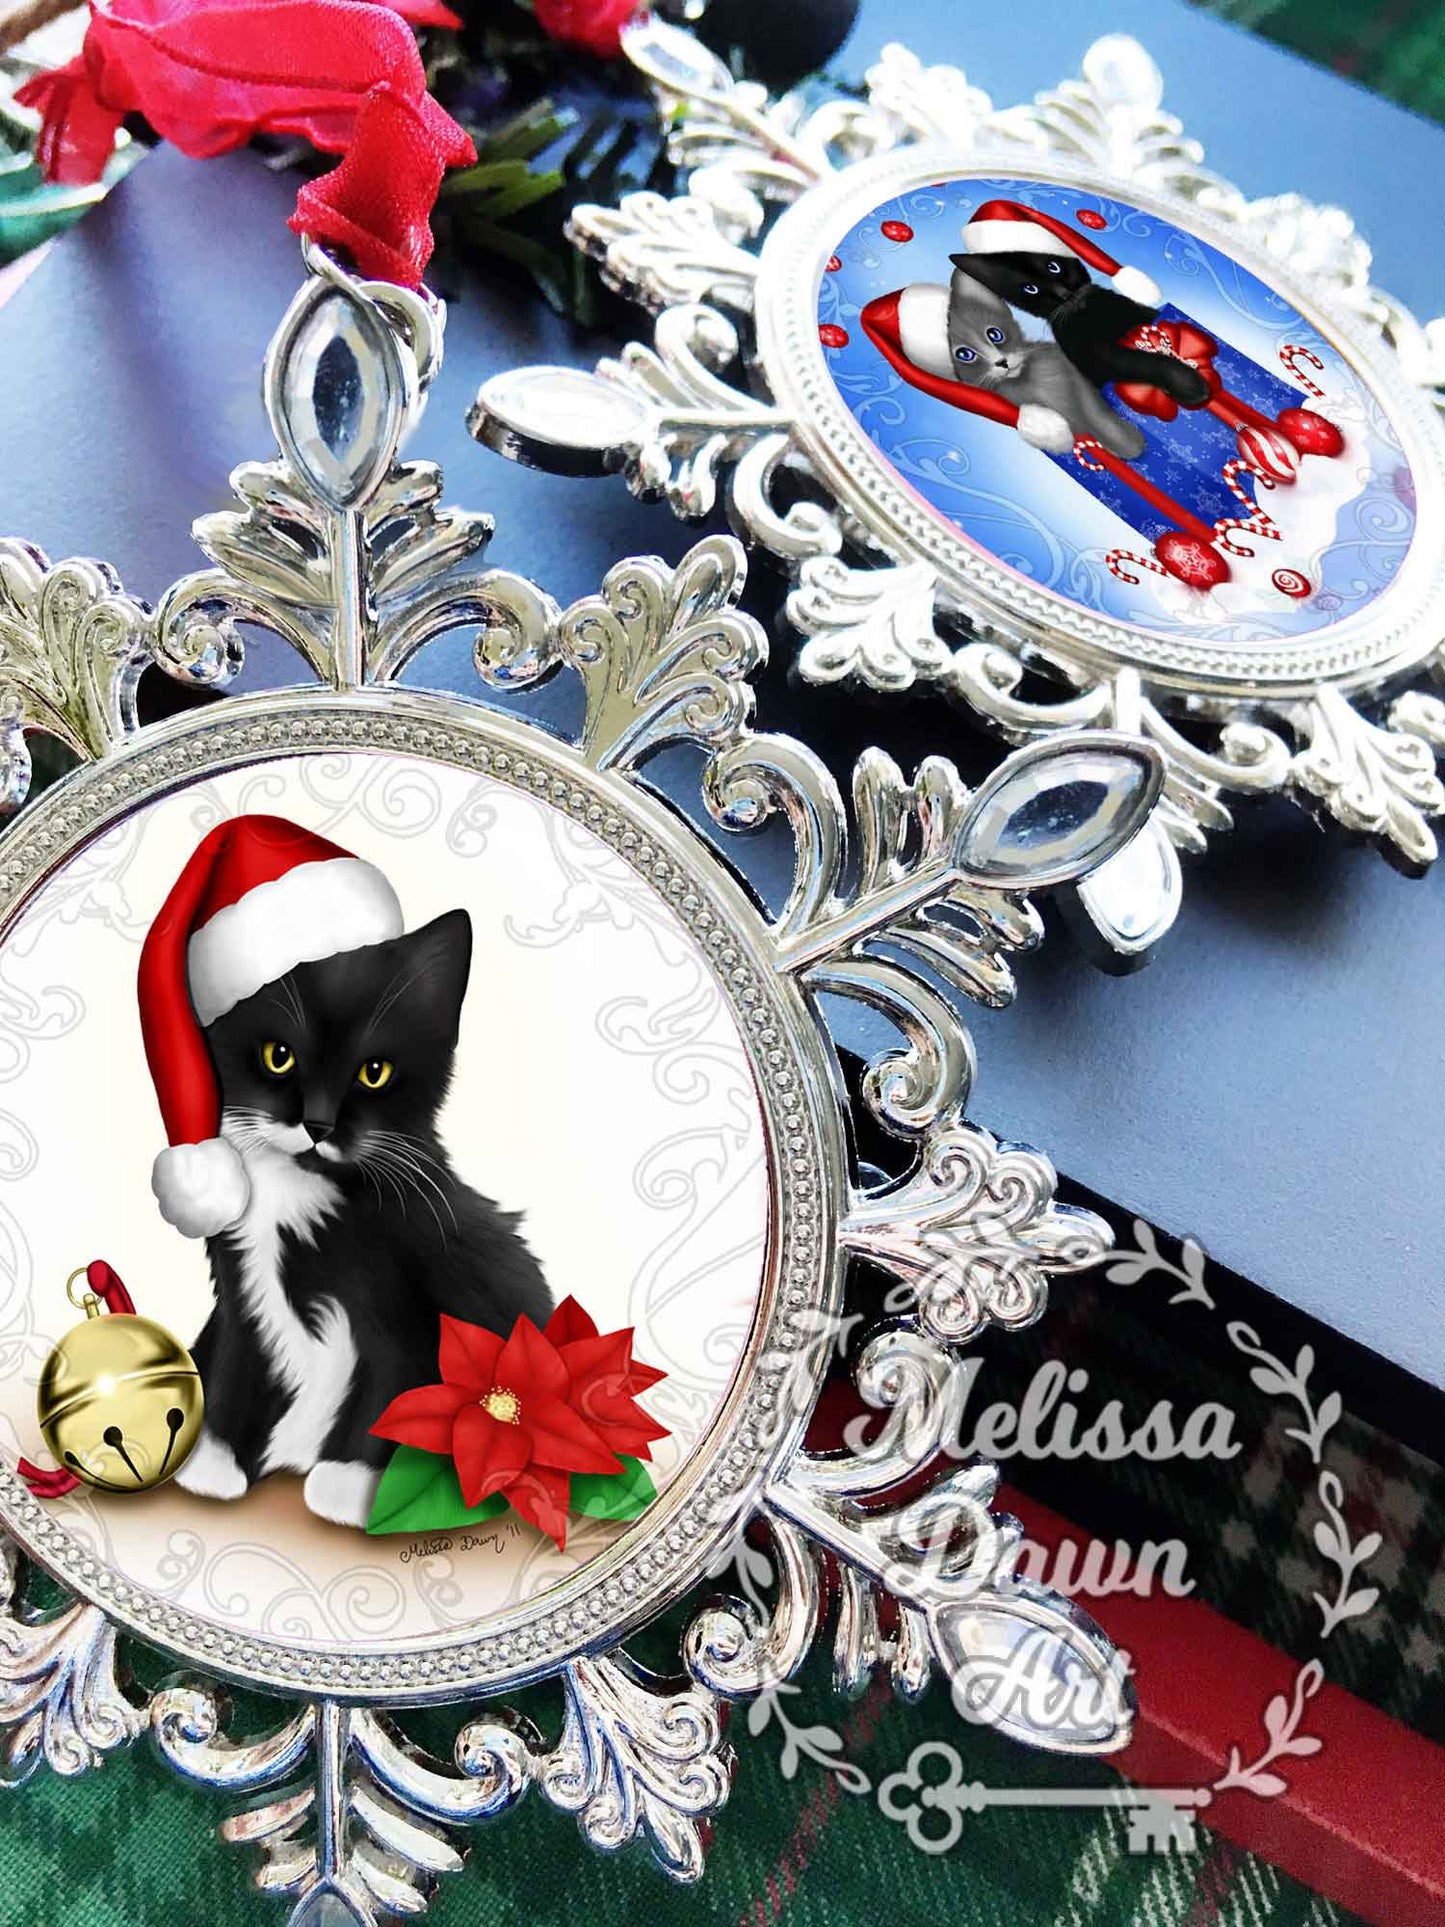 Christmas Ornament / Cat Ornament / Cat Christmas Ornament / Calico Cat Ornament / Sleeping Cat Ornament / Calico Cat Art / Calico Ornament